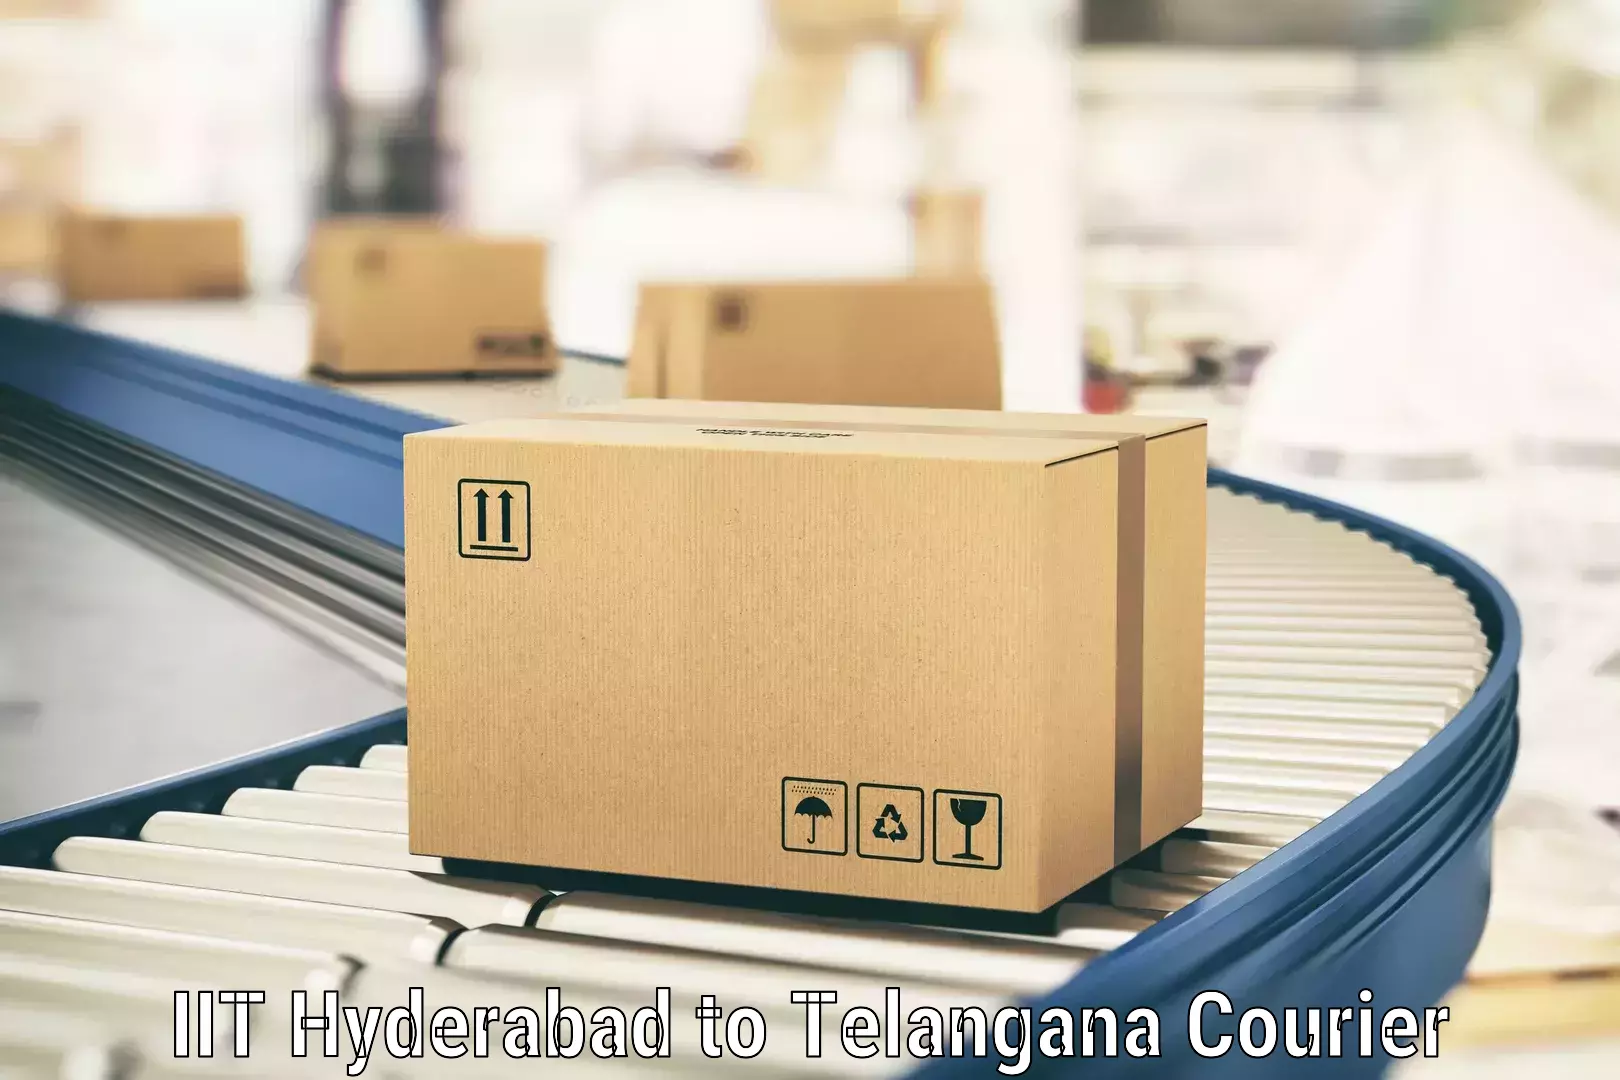 Cost-effective courier solutions IIT Hyderabad to IIT Hyderabad